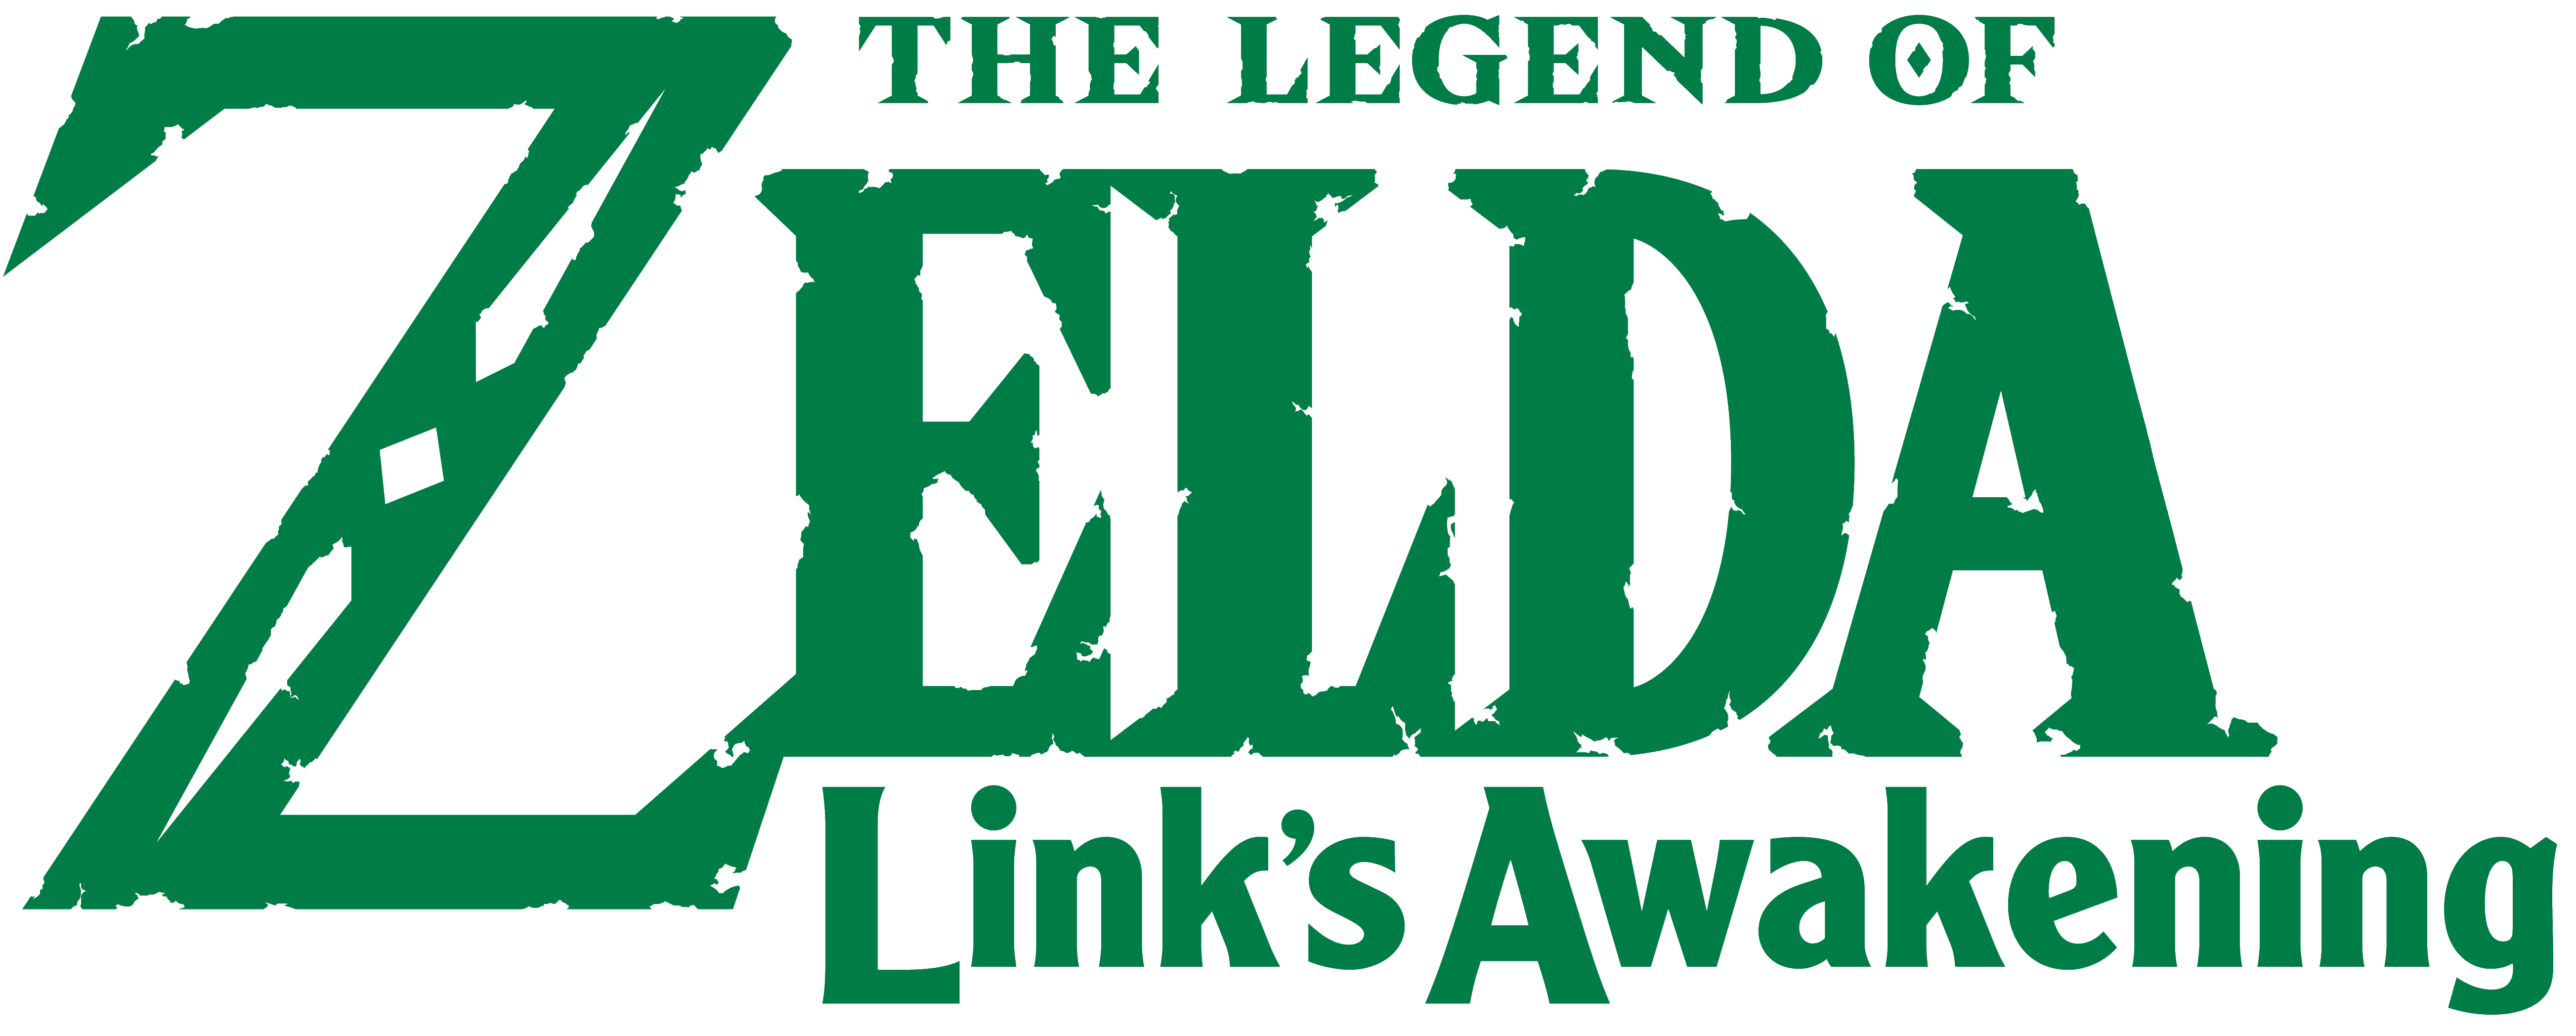 Logo Of The Legend Zelda PNG Image